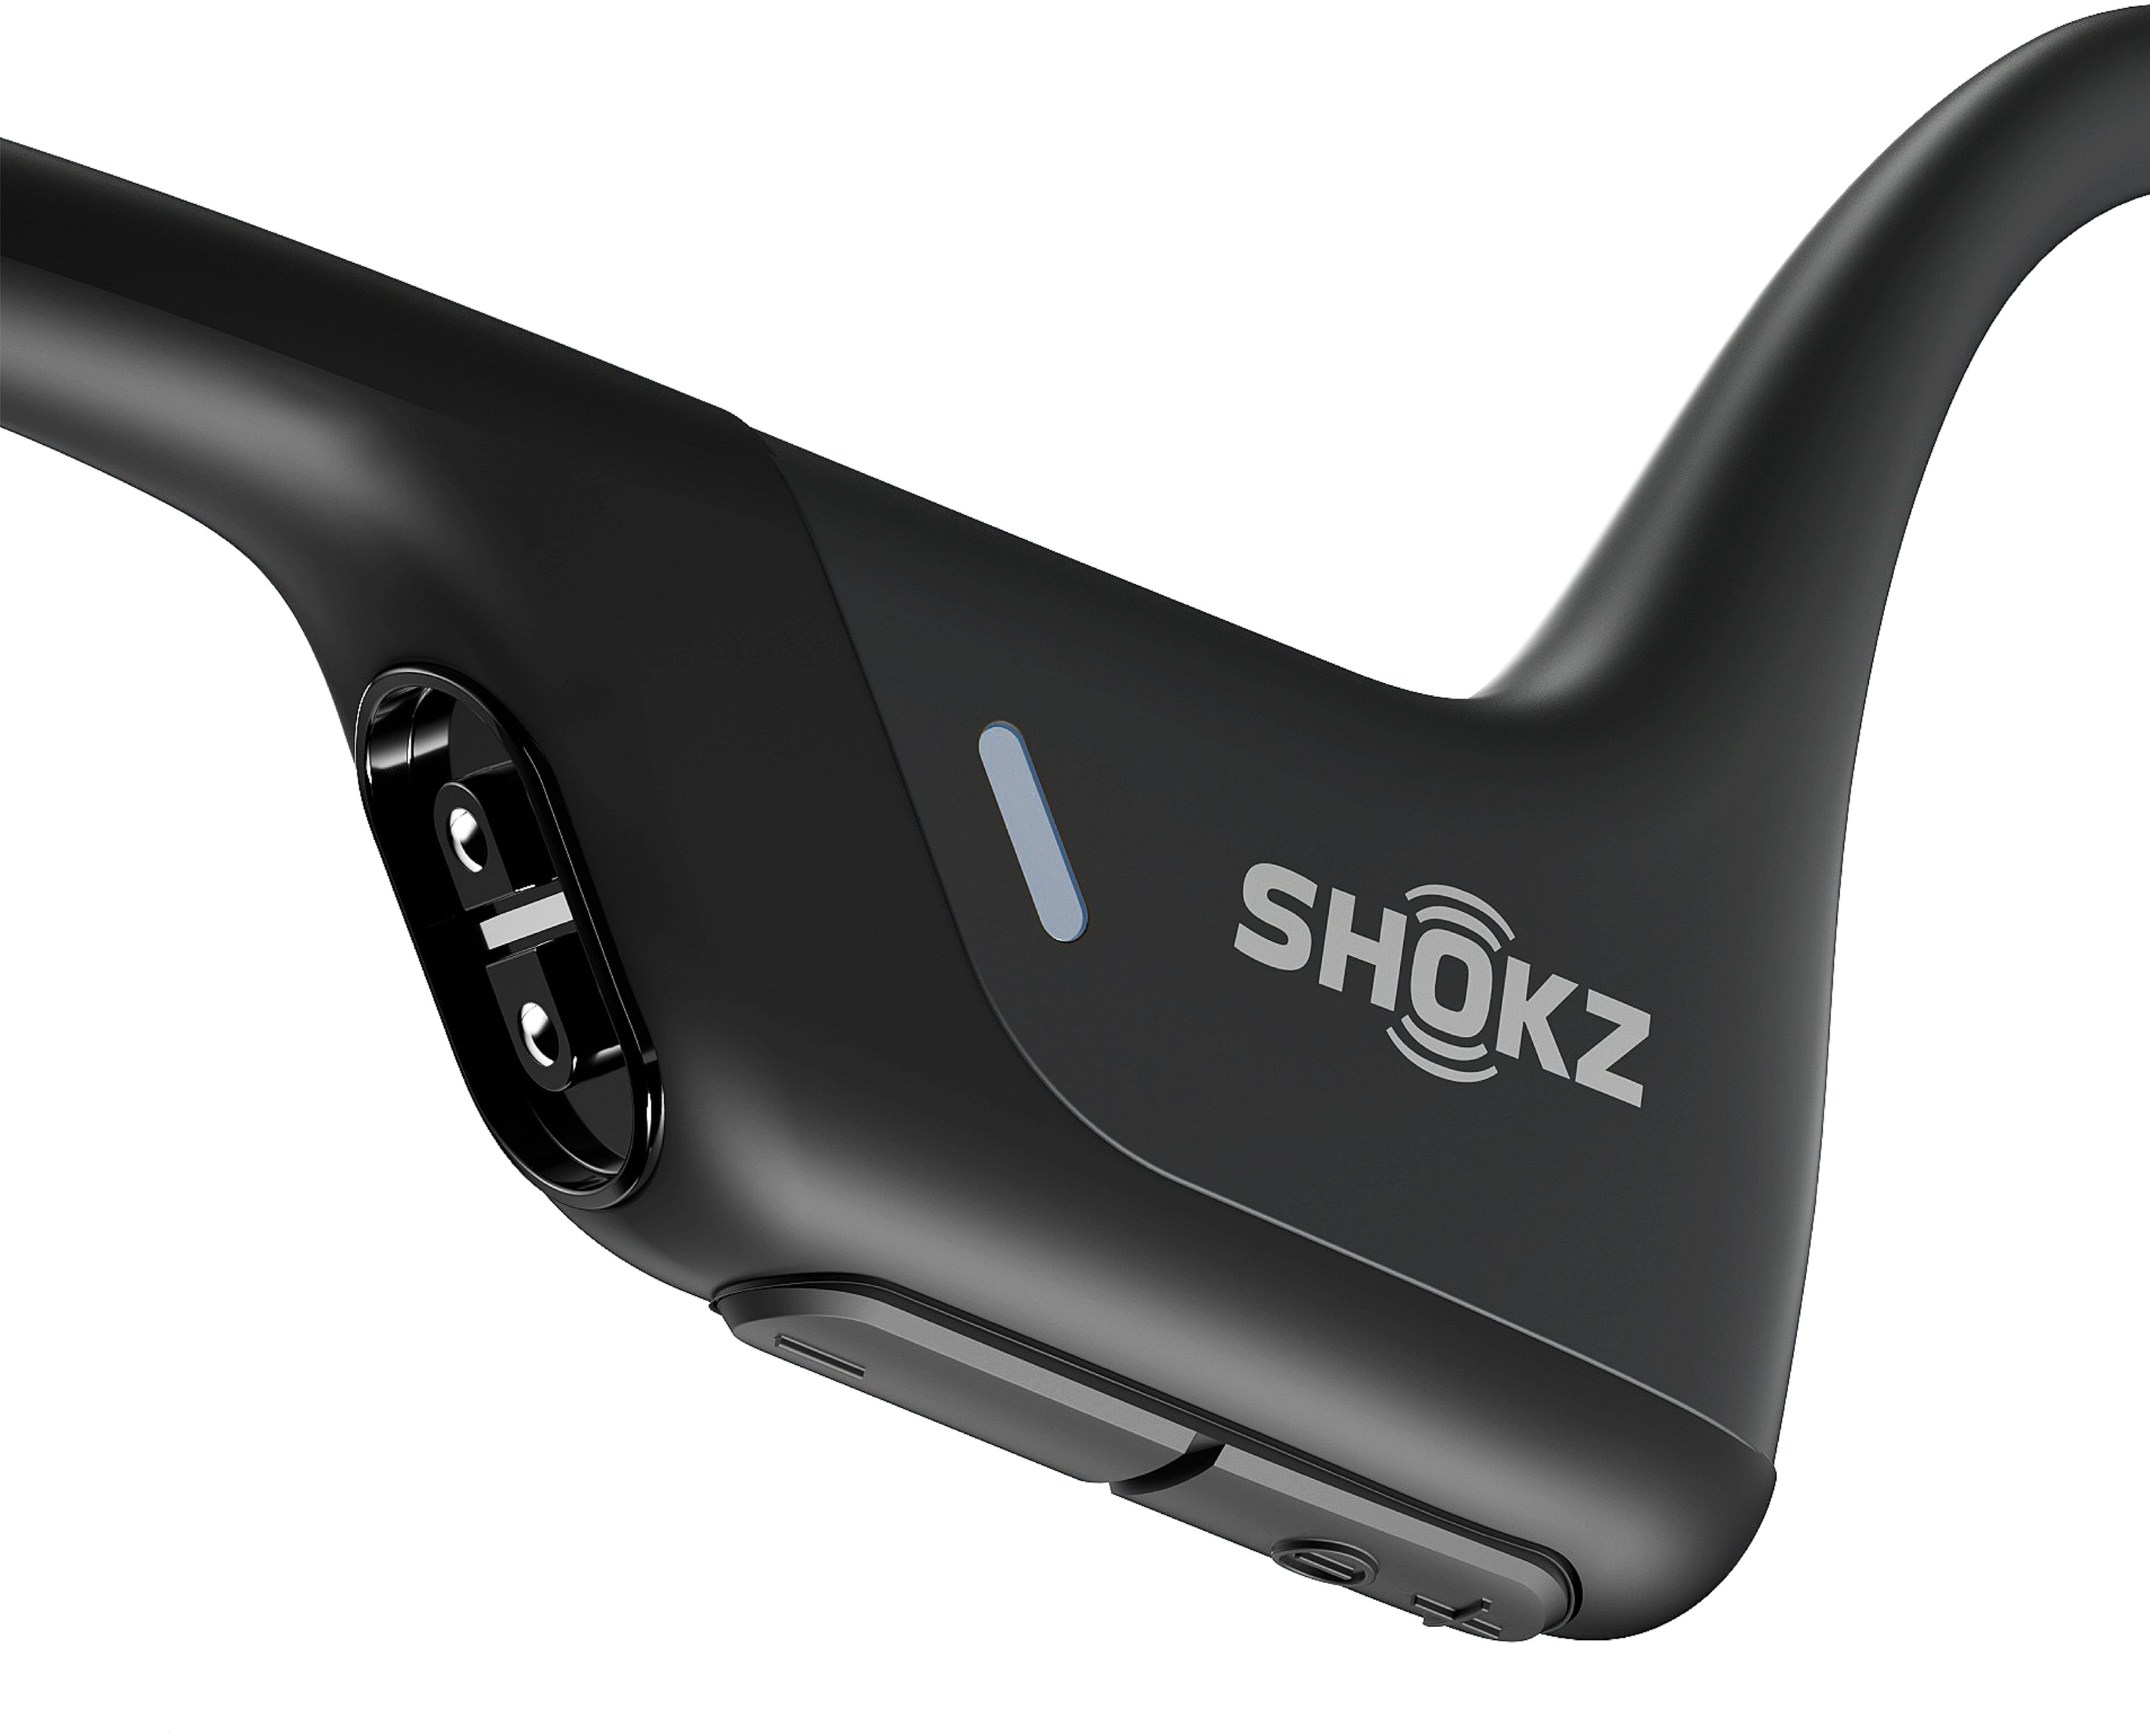 【安心発送】 新品未開封！　Shokz Pro OpenRun ヘッドフォン